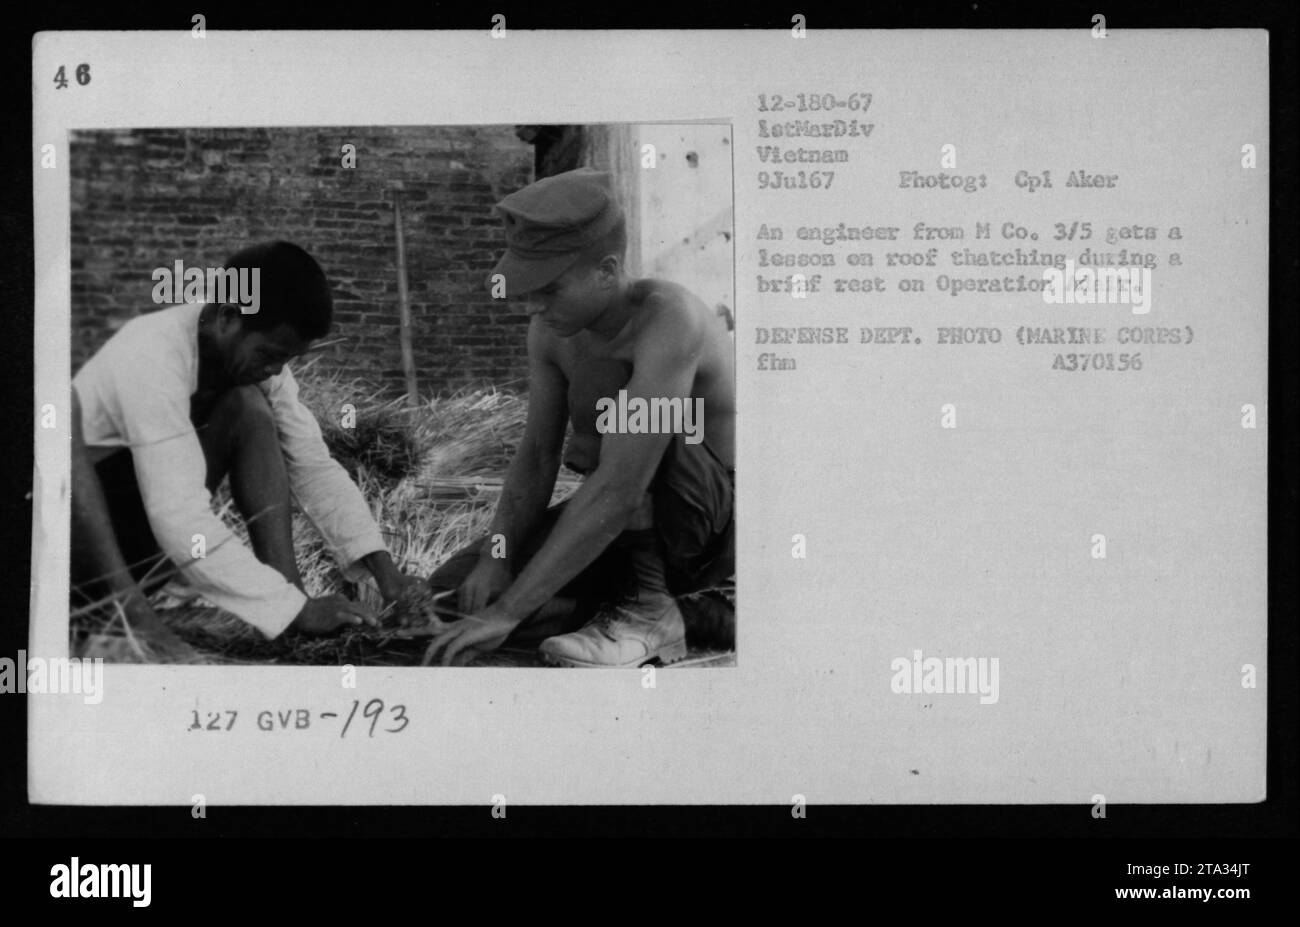 Un ingegnere di M Co. 3/5 apprende informazioni sul trituramento del tetto durante una pausa sull'operazione Adair, Vietnam, 9 luglio 1967. Foto scattata da Cpl Aker. Foto Stock